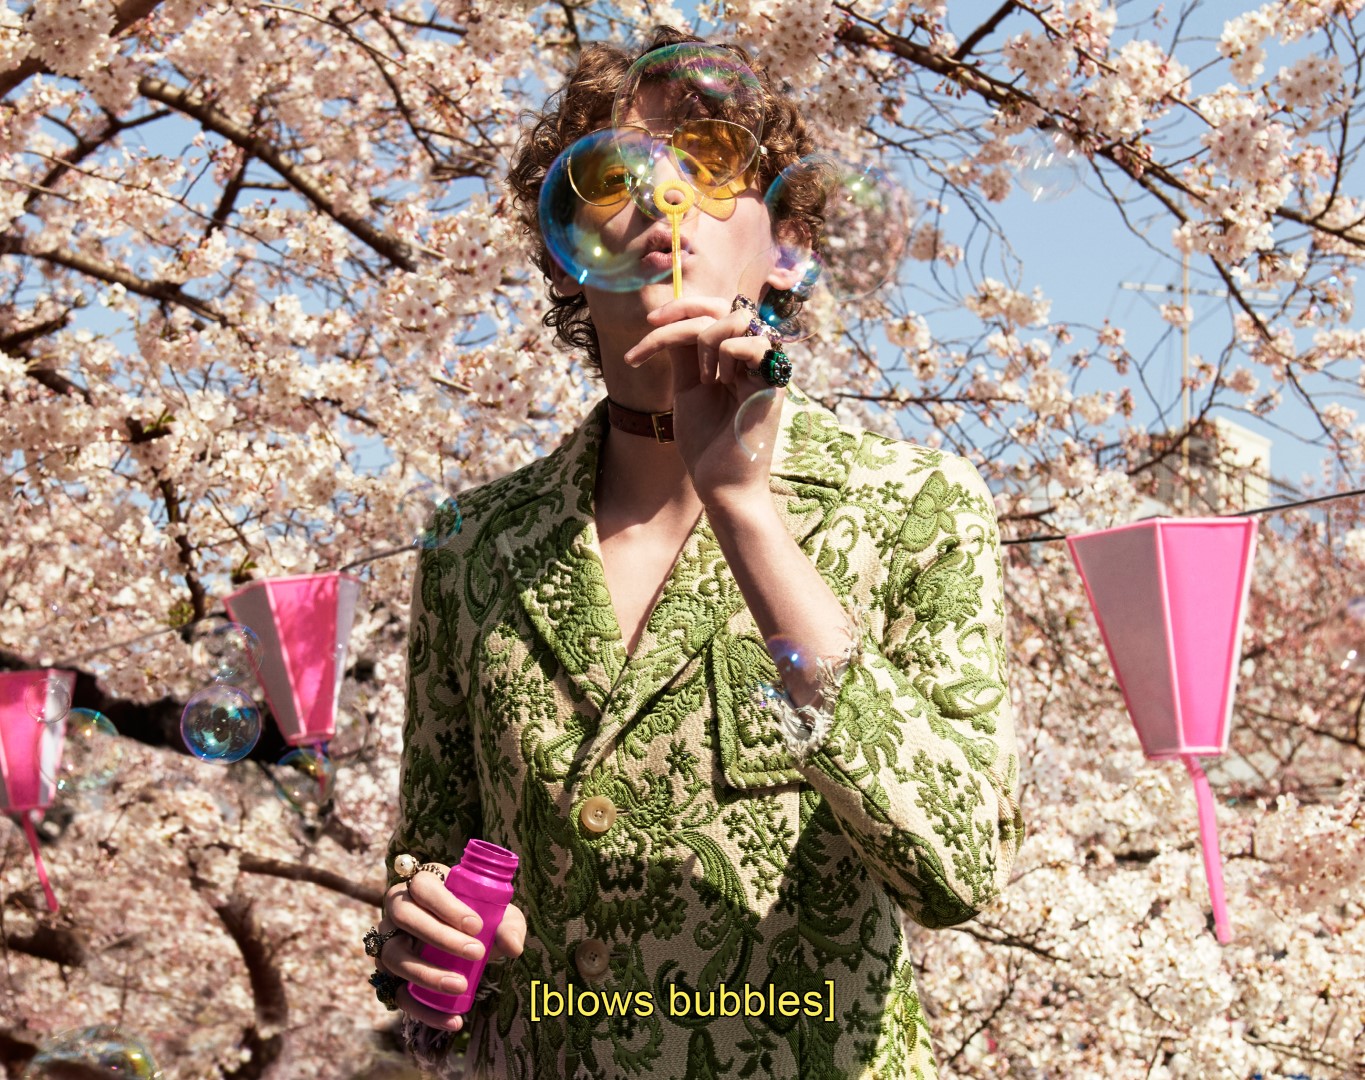 Gucci campagna pubblicitaria autunno inverno 2016 2017: le eccentriche sottoculture di Tokyo